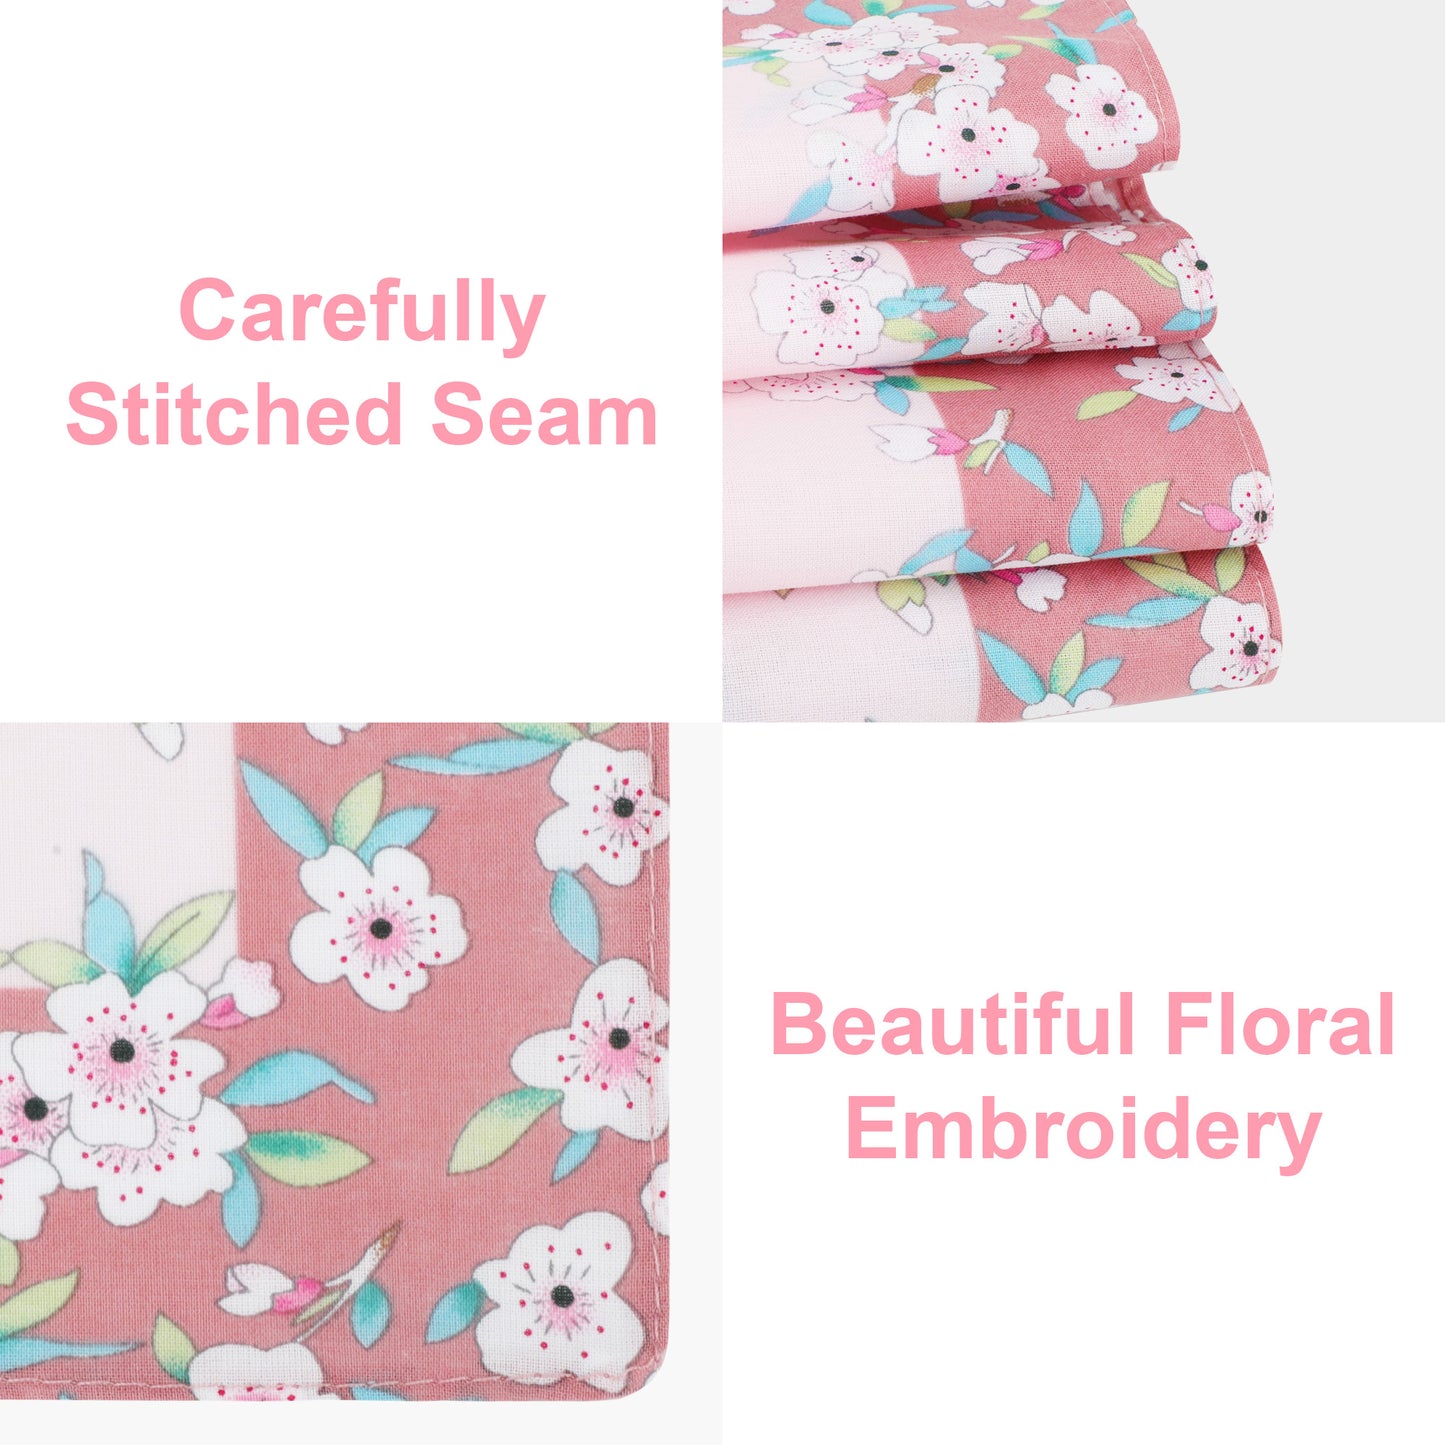 3Pcs Classic Floral Print Pocket Square Handkerchiefs - Ladies Cotton Washable 18x18" Handkerchiefs Cherry Blossoms Hanky Pocket Square